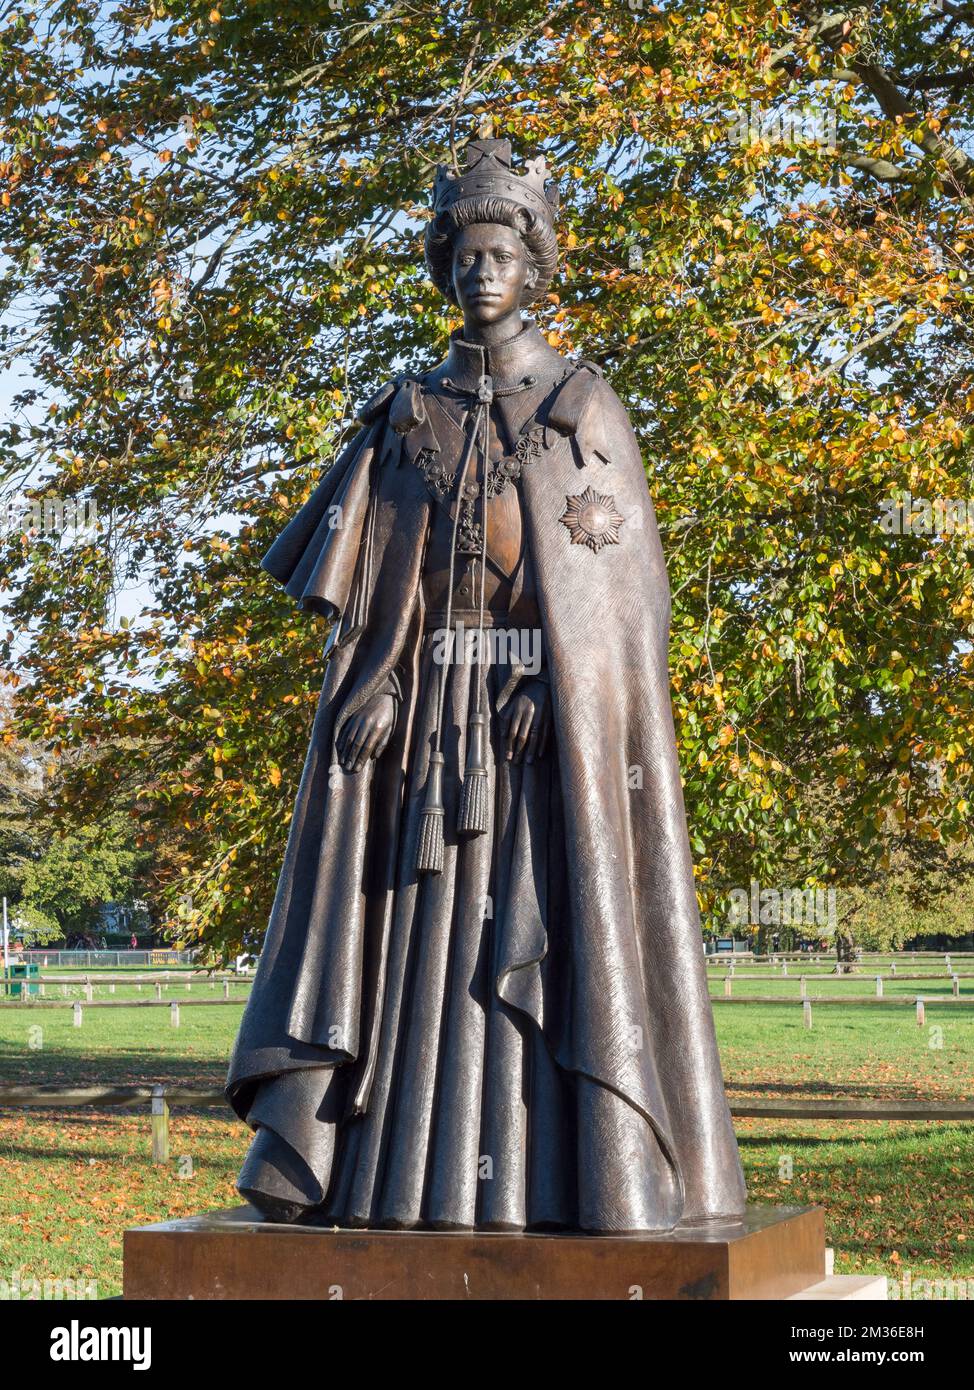 Statue de la Reine Elizabeth II créée par le sculpteur James Butler sur le terrain de plaisance de Runnymede, Runnymede, Royaume-Uni. Banque D'Images